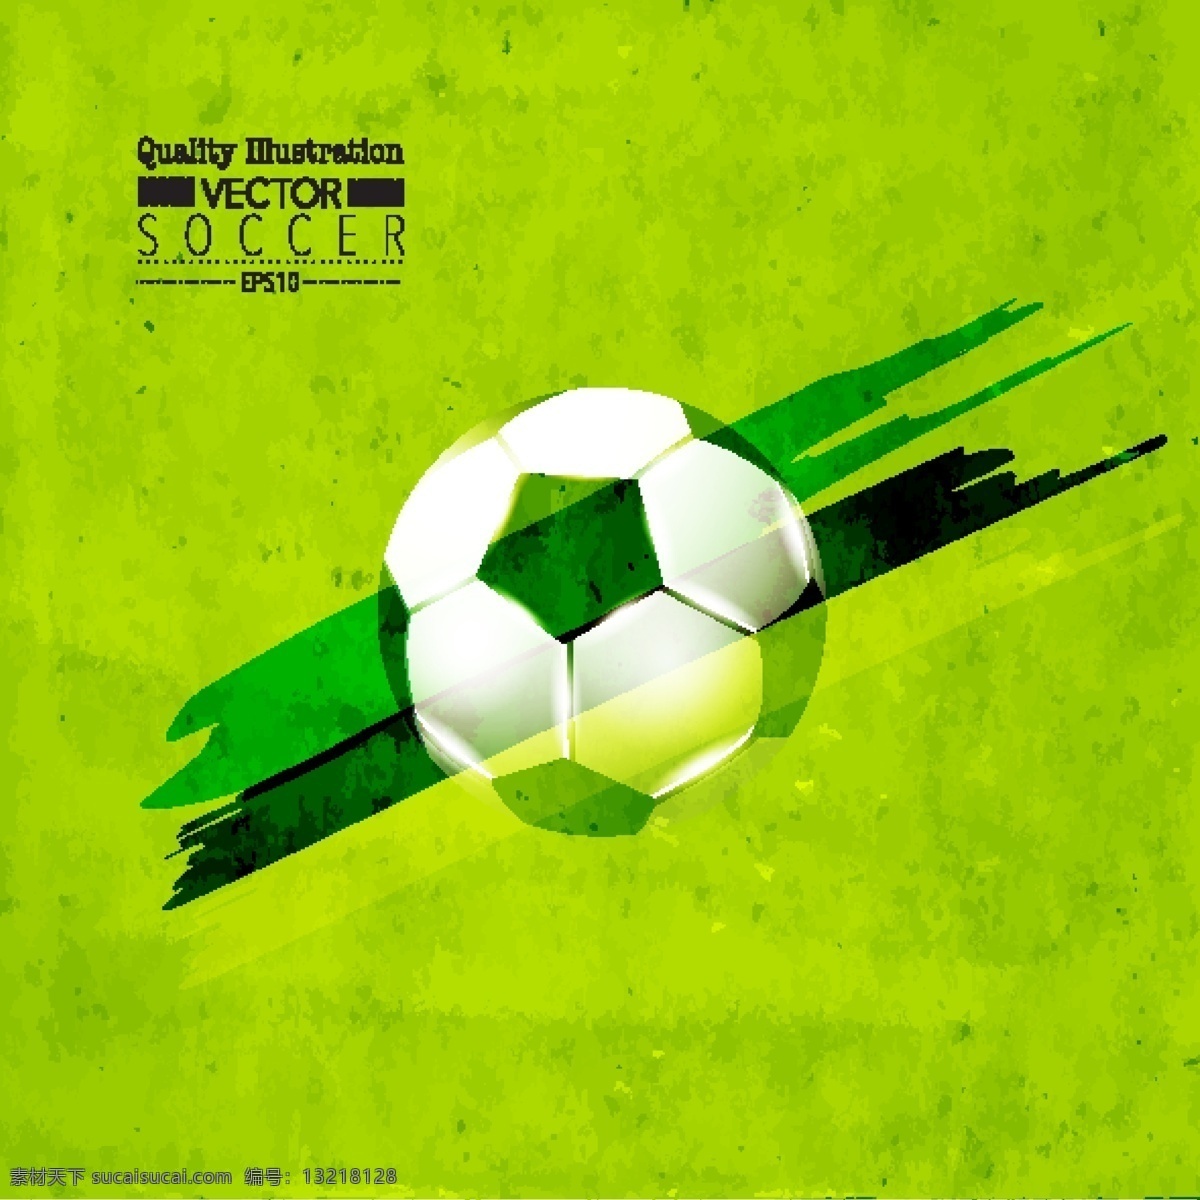 绿色 足球 海报 背景 矢量 模板下载 世界杯 巴西 体育运动 生活百科 矢量素材